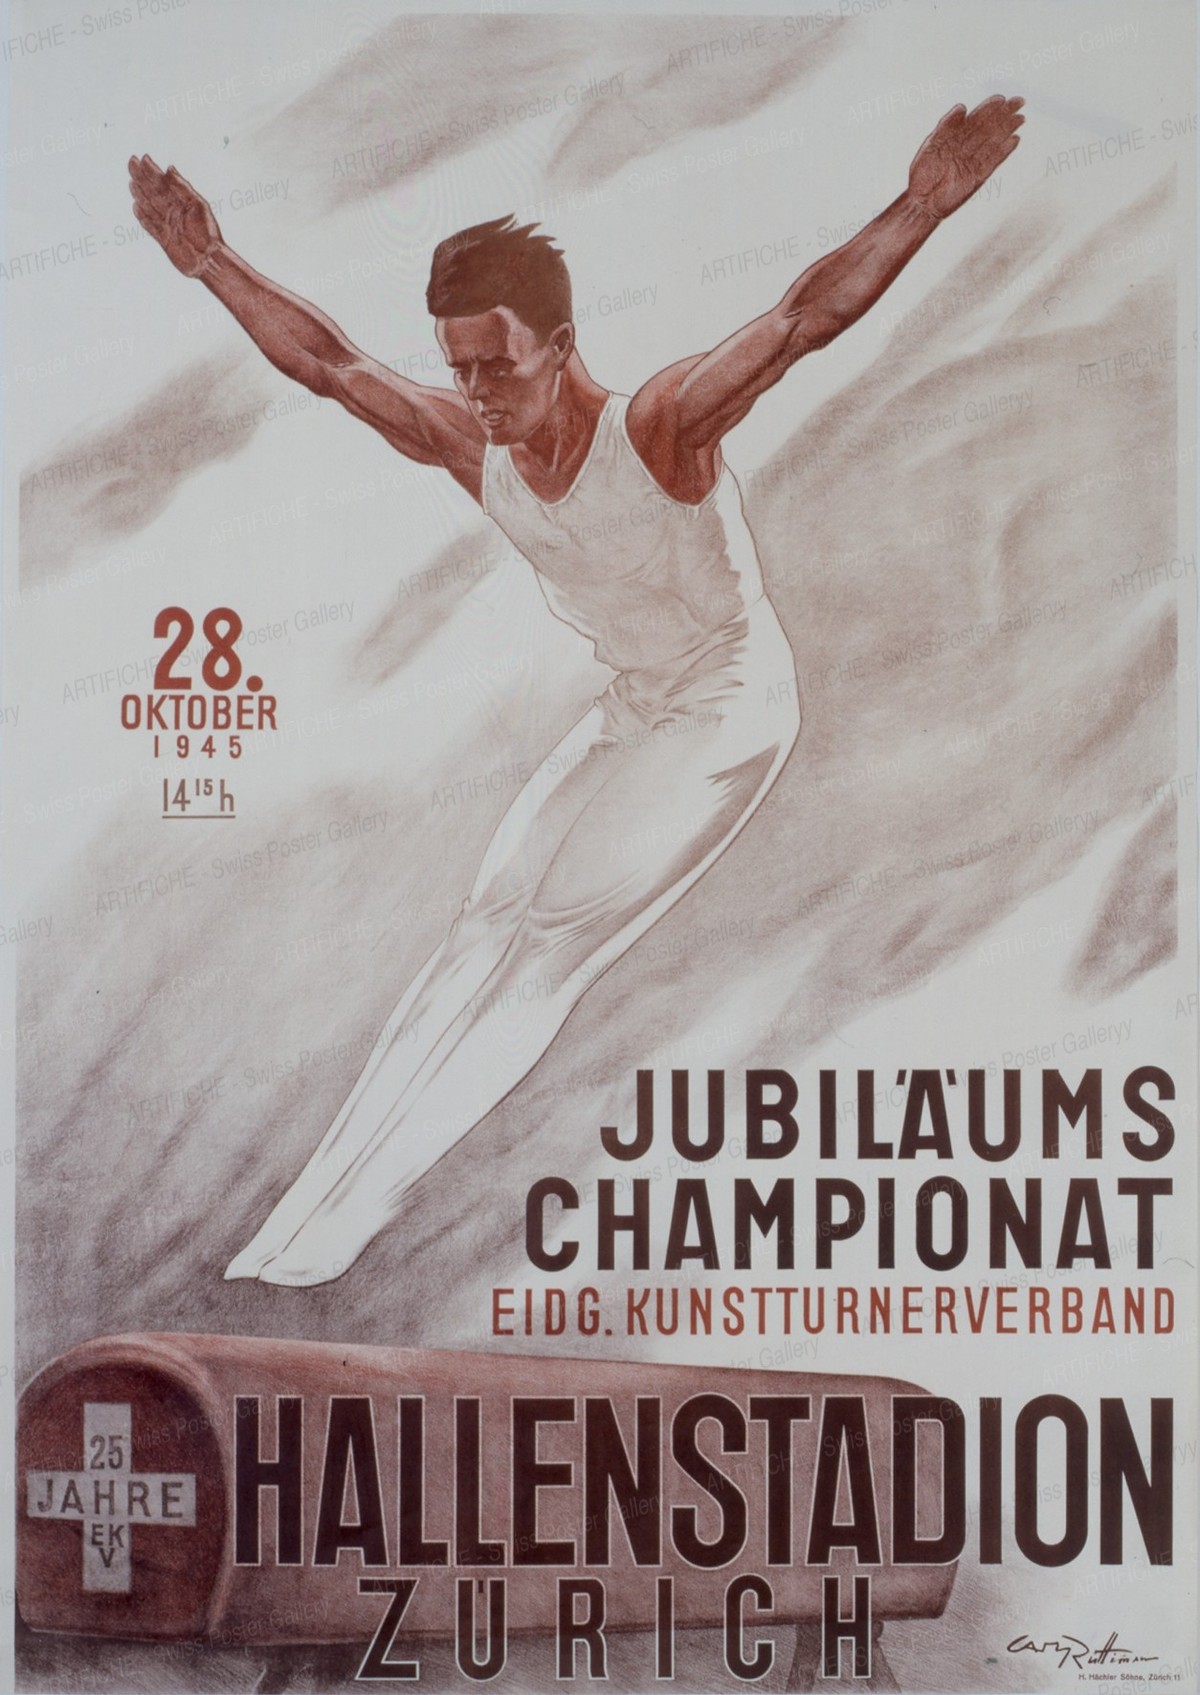 JUBILÄUMS CHAMPIONAT – Eidg. Kunstturnerverband – HALLENSTADION ZÜRICH – 28. Oktober 1945, Carl Rüttimann